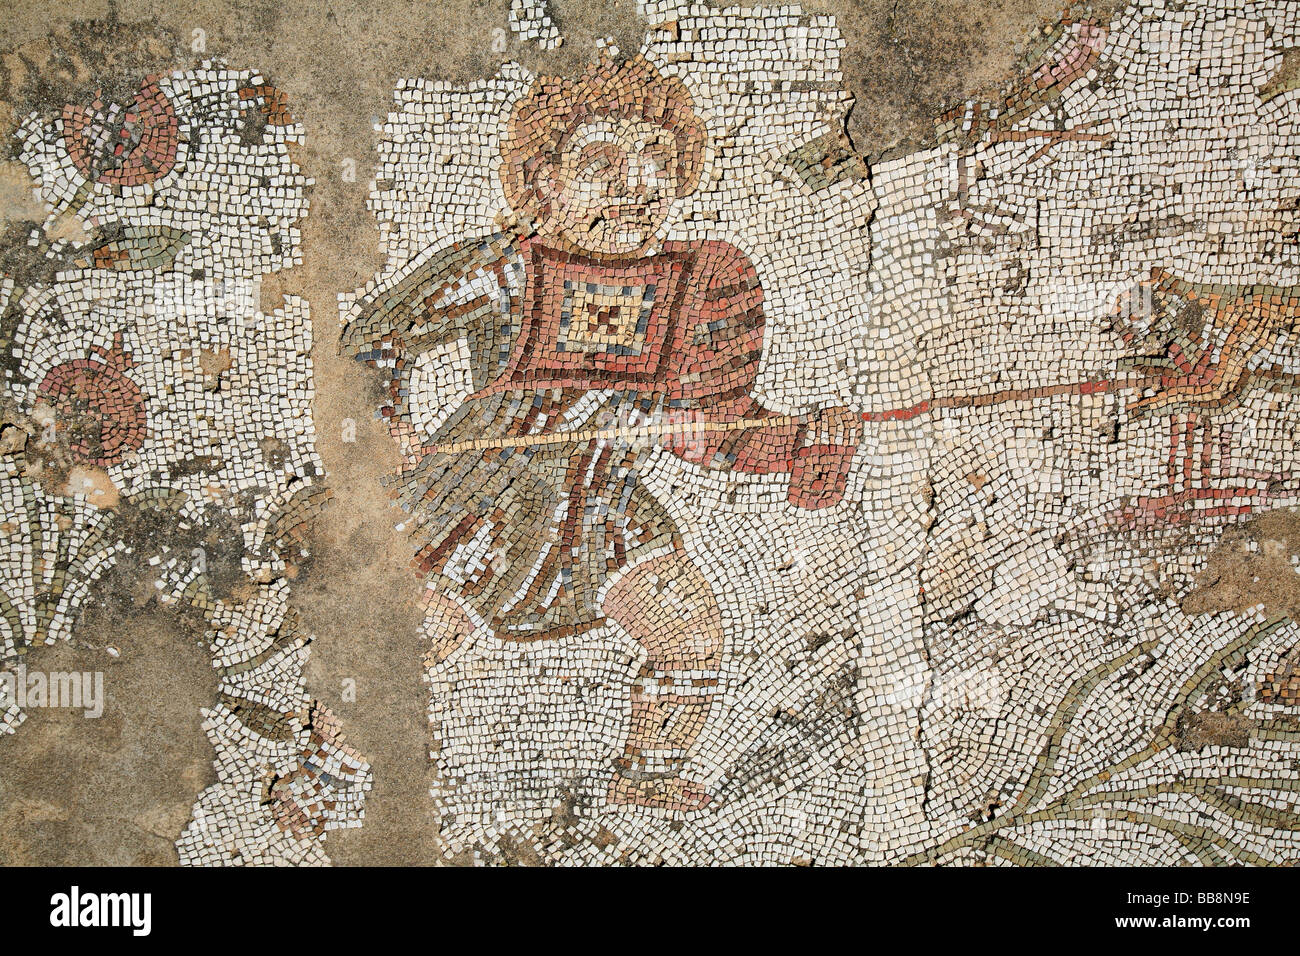 Mosaïque d'un gladiateur combattant un lion avec une lance à Carthage, Tunisie Banque D'Images